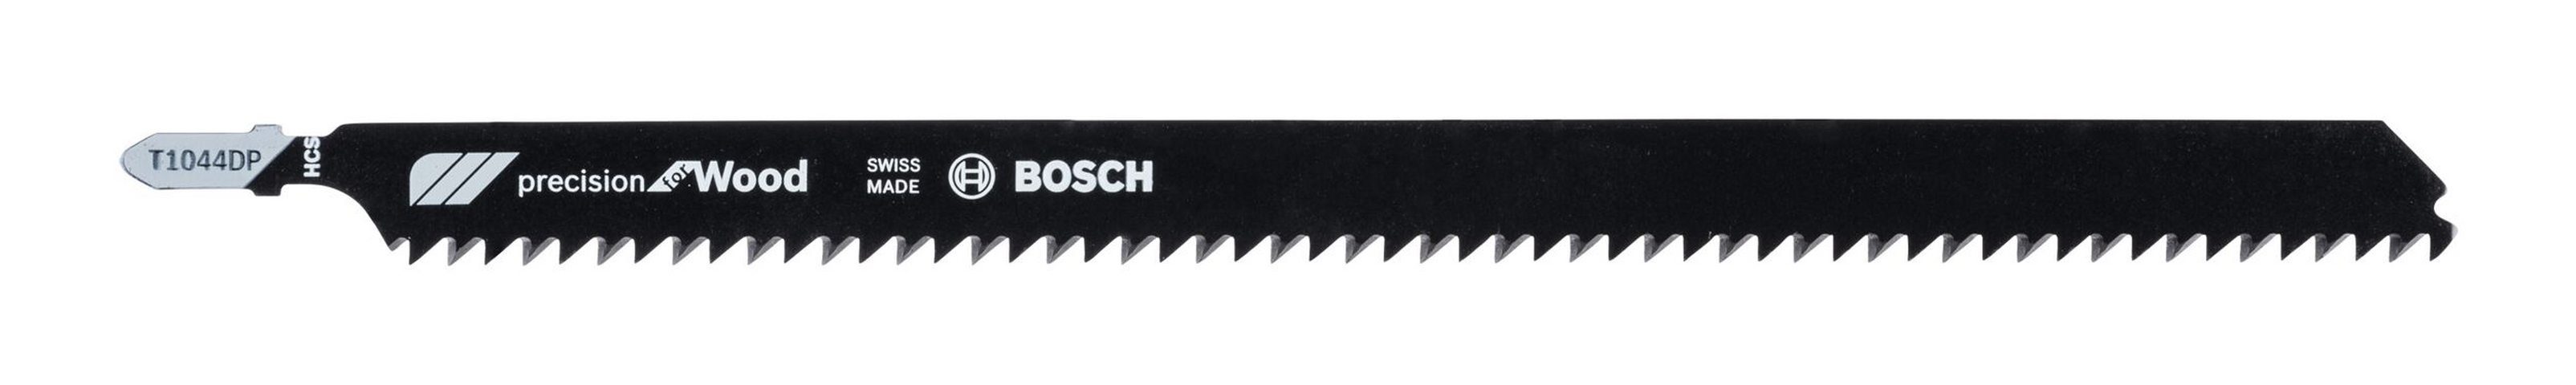 BOSCH Stichsägeblatt (3 Stück), T 1044 - Wood Precision DP for 3er-Pack